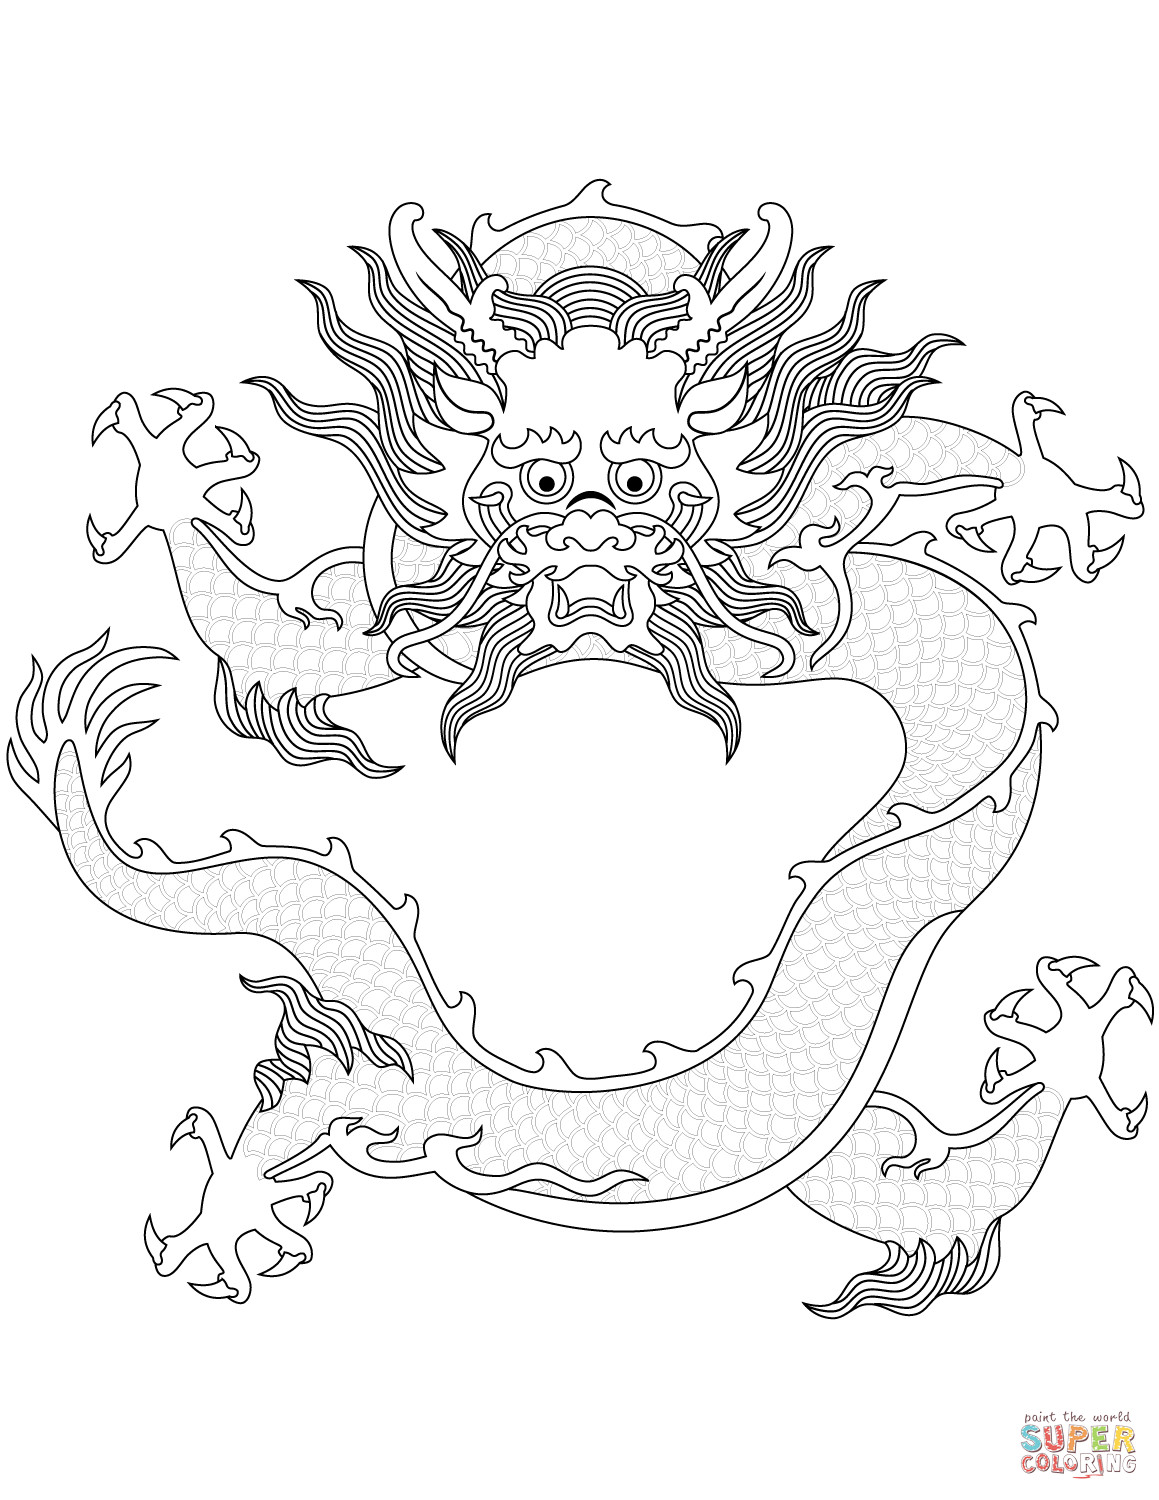 Ausmalbilder Chinesische Drachen
 Ausmalbild Chinesischer Drachen